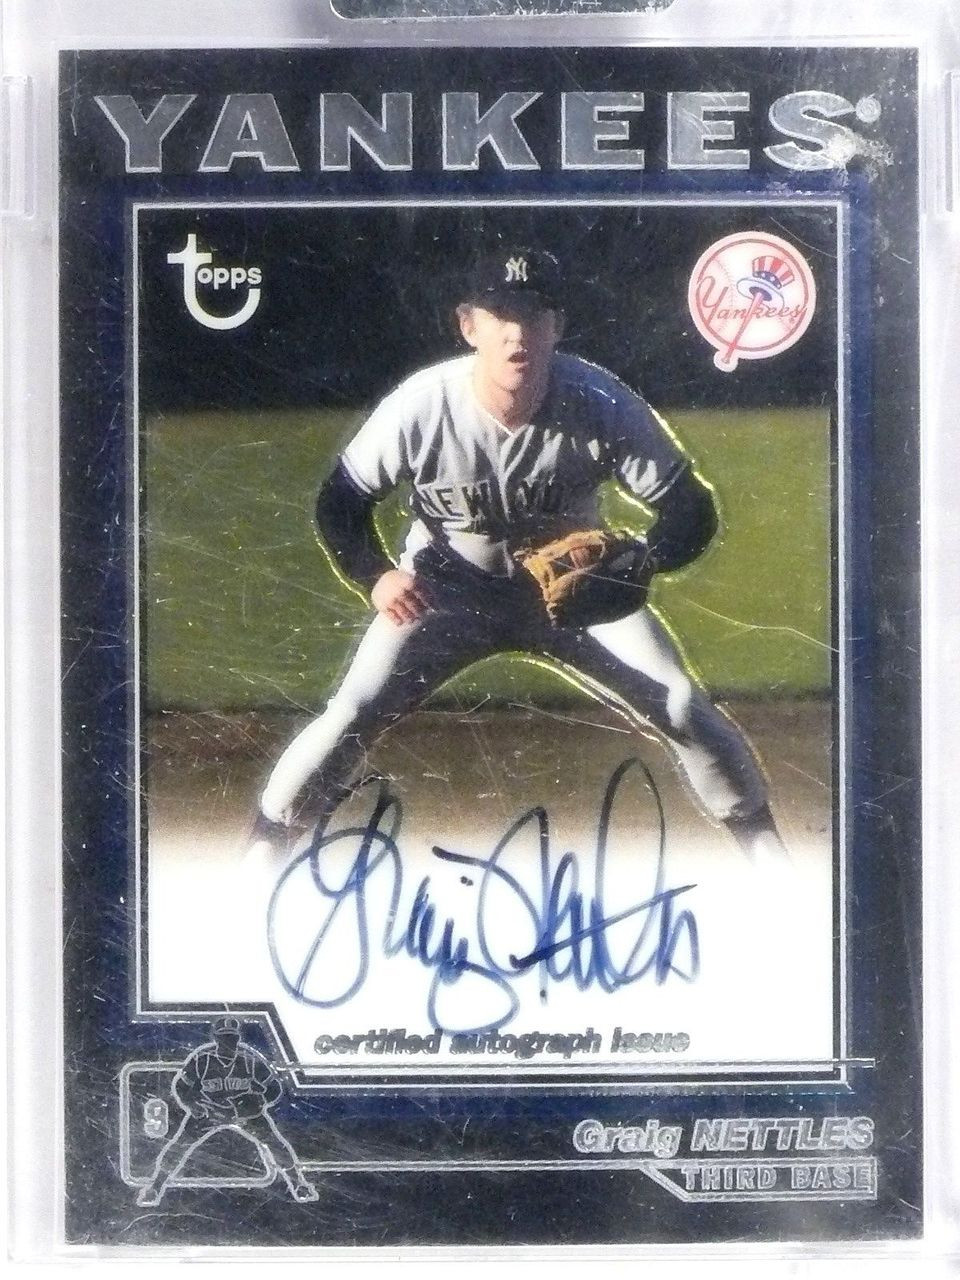 Autographed Graig Nettles MLB Baseballs, Autographed Baseballs